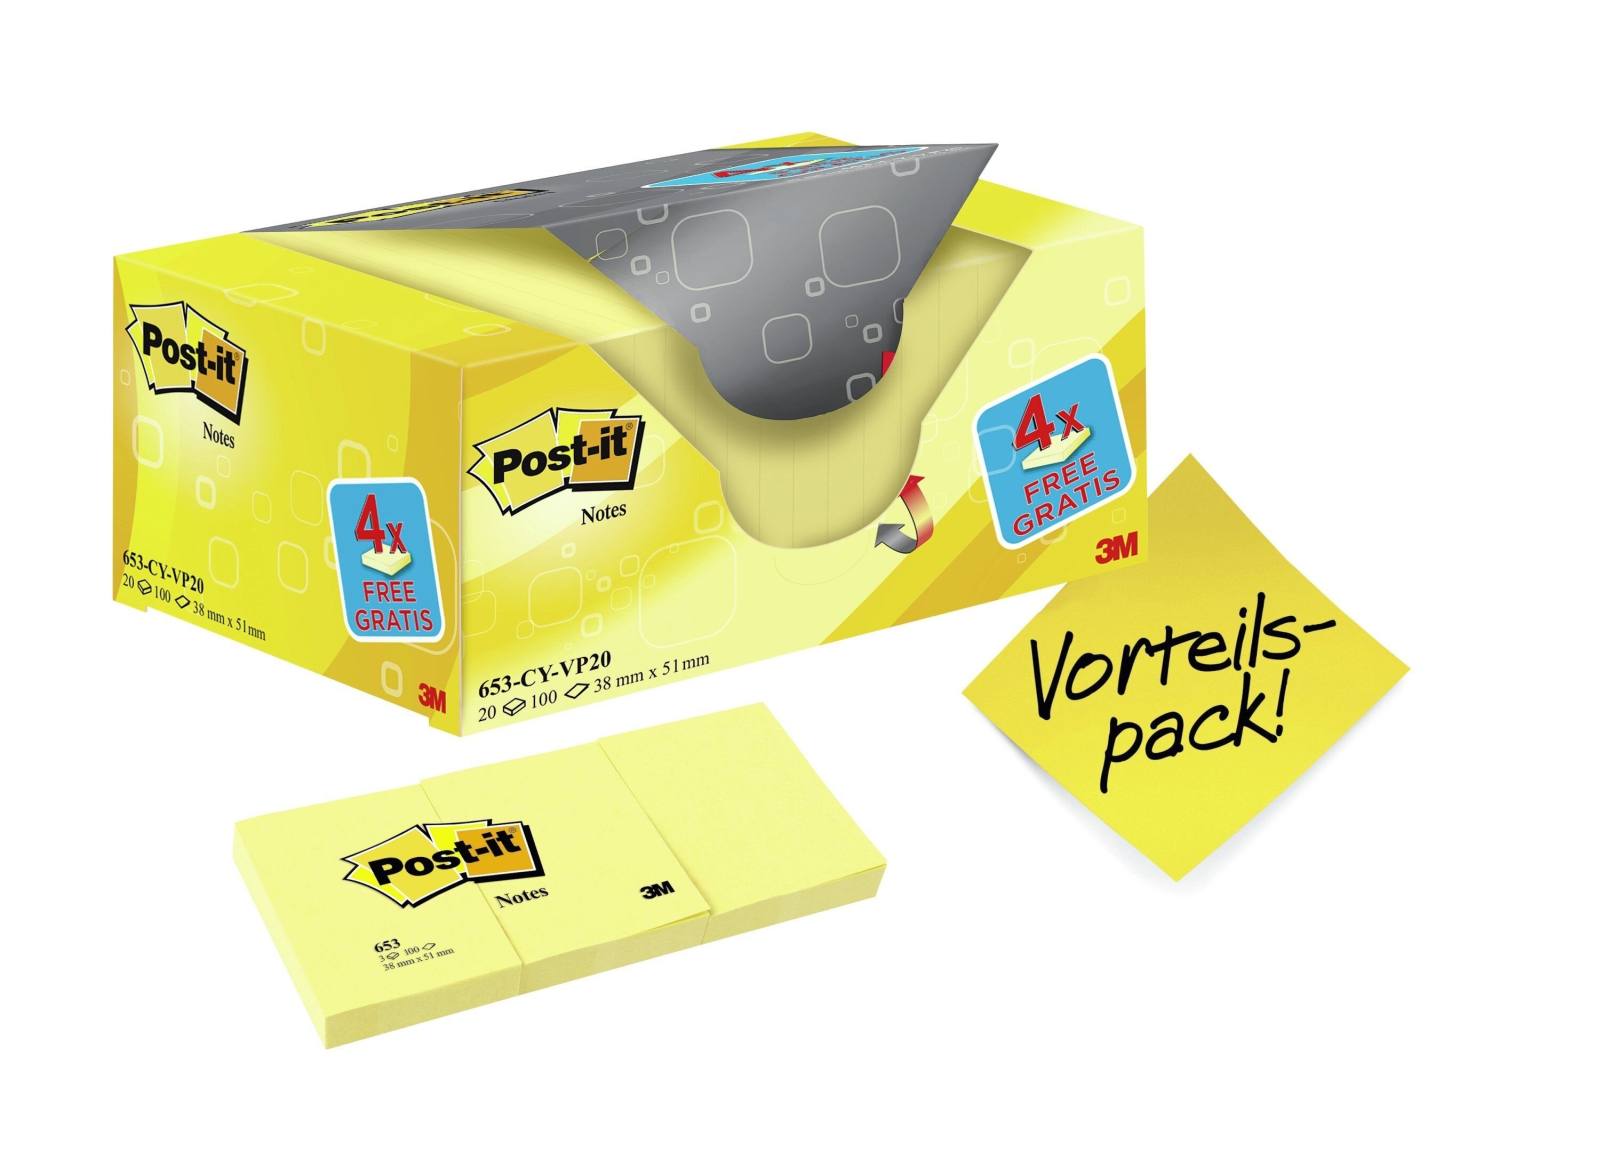 3M Post-it Notes Promotion 653Y-20, 20 Blöcke à 100 Blatt im Karton zum Vorteilspreis, gelb, 51 mm x 38 mm